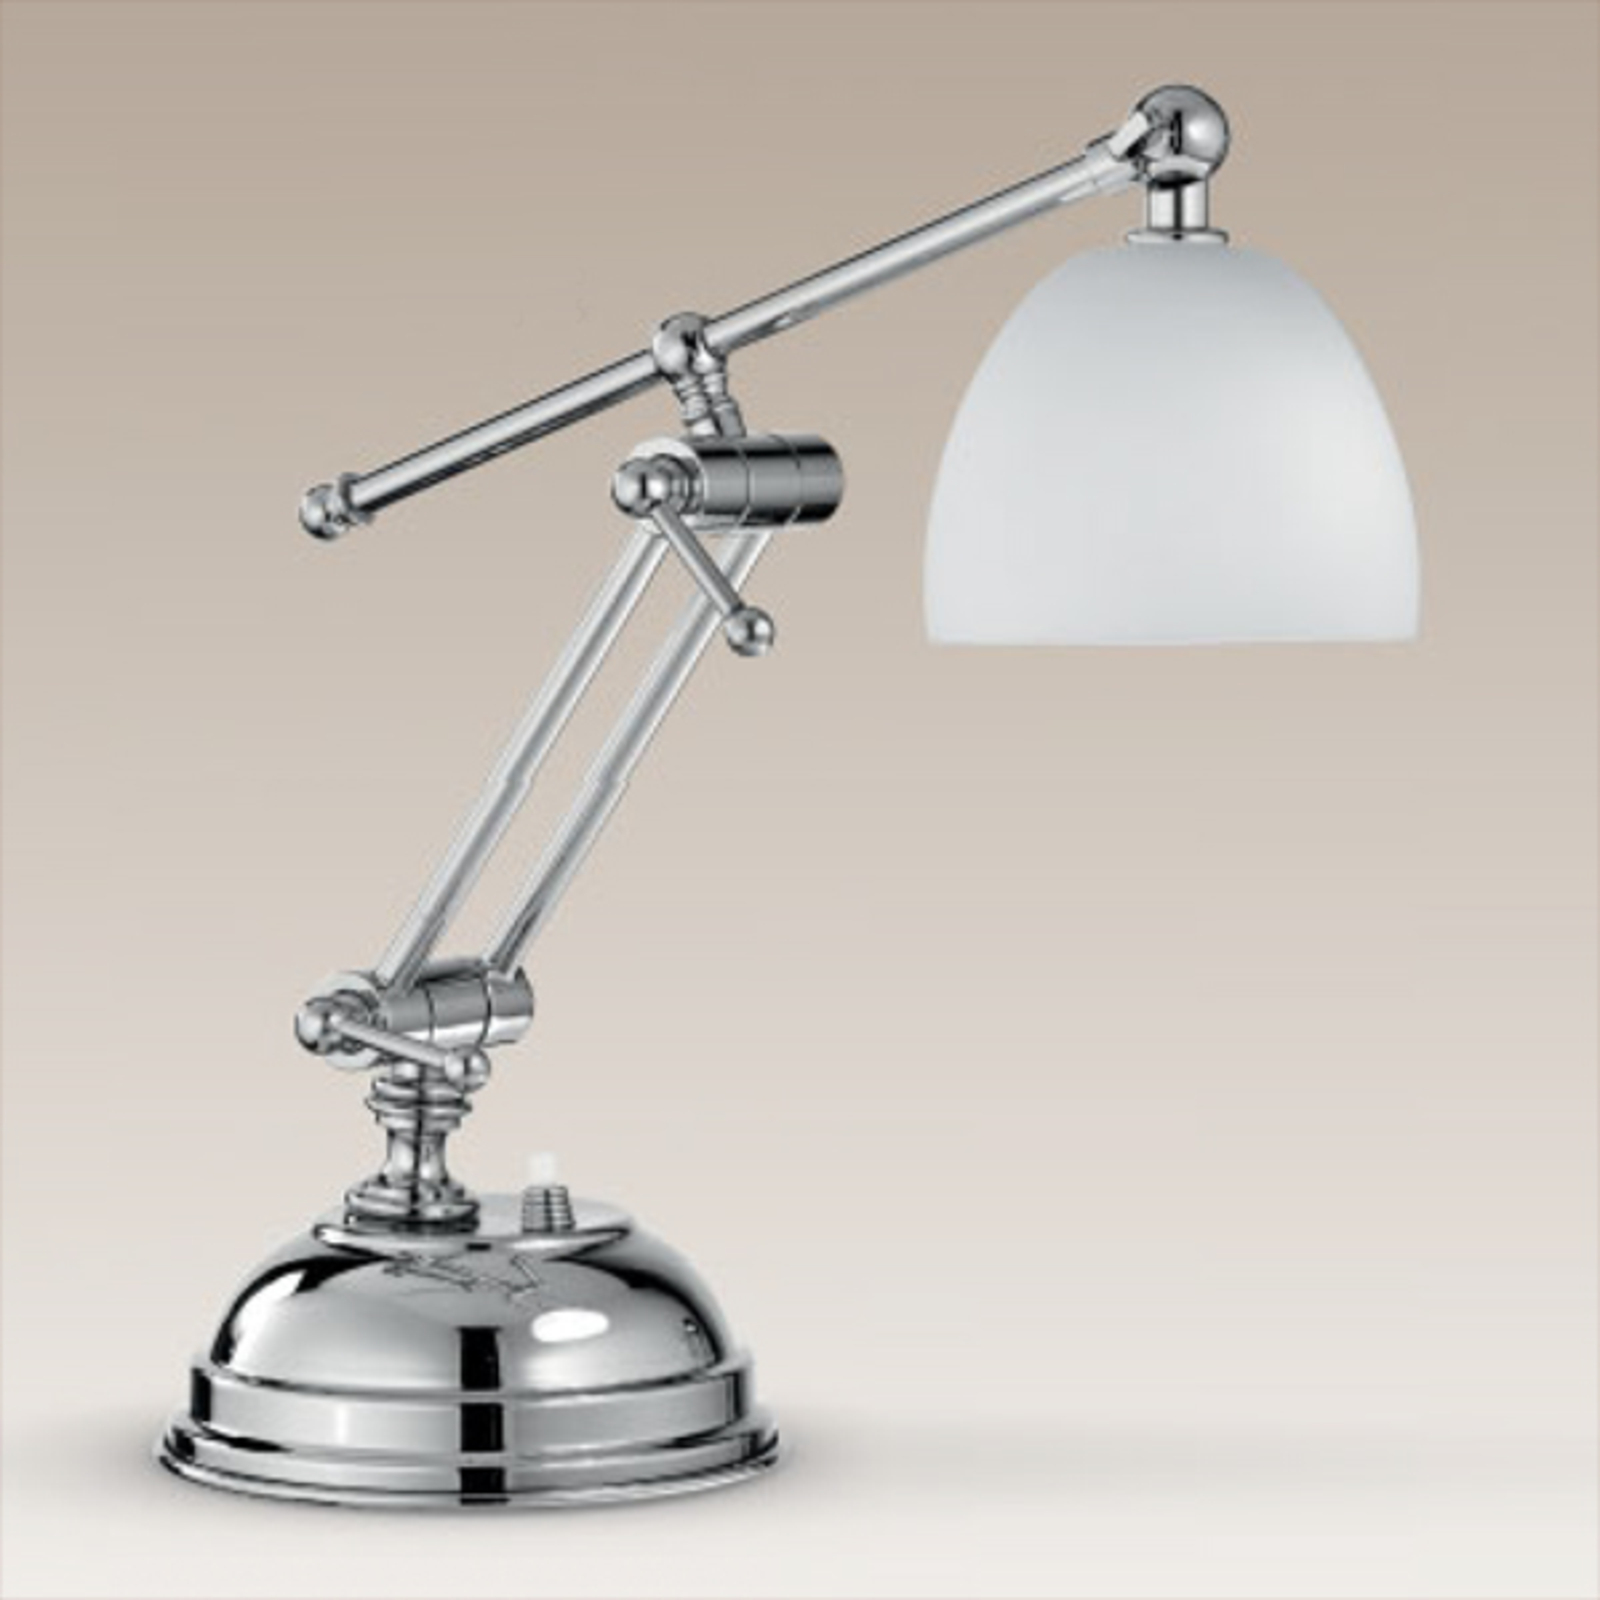 Galleria table lamp